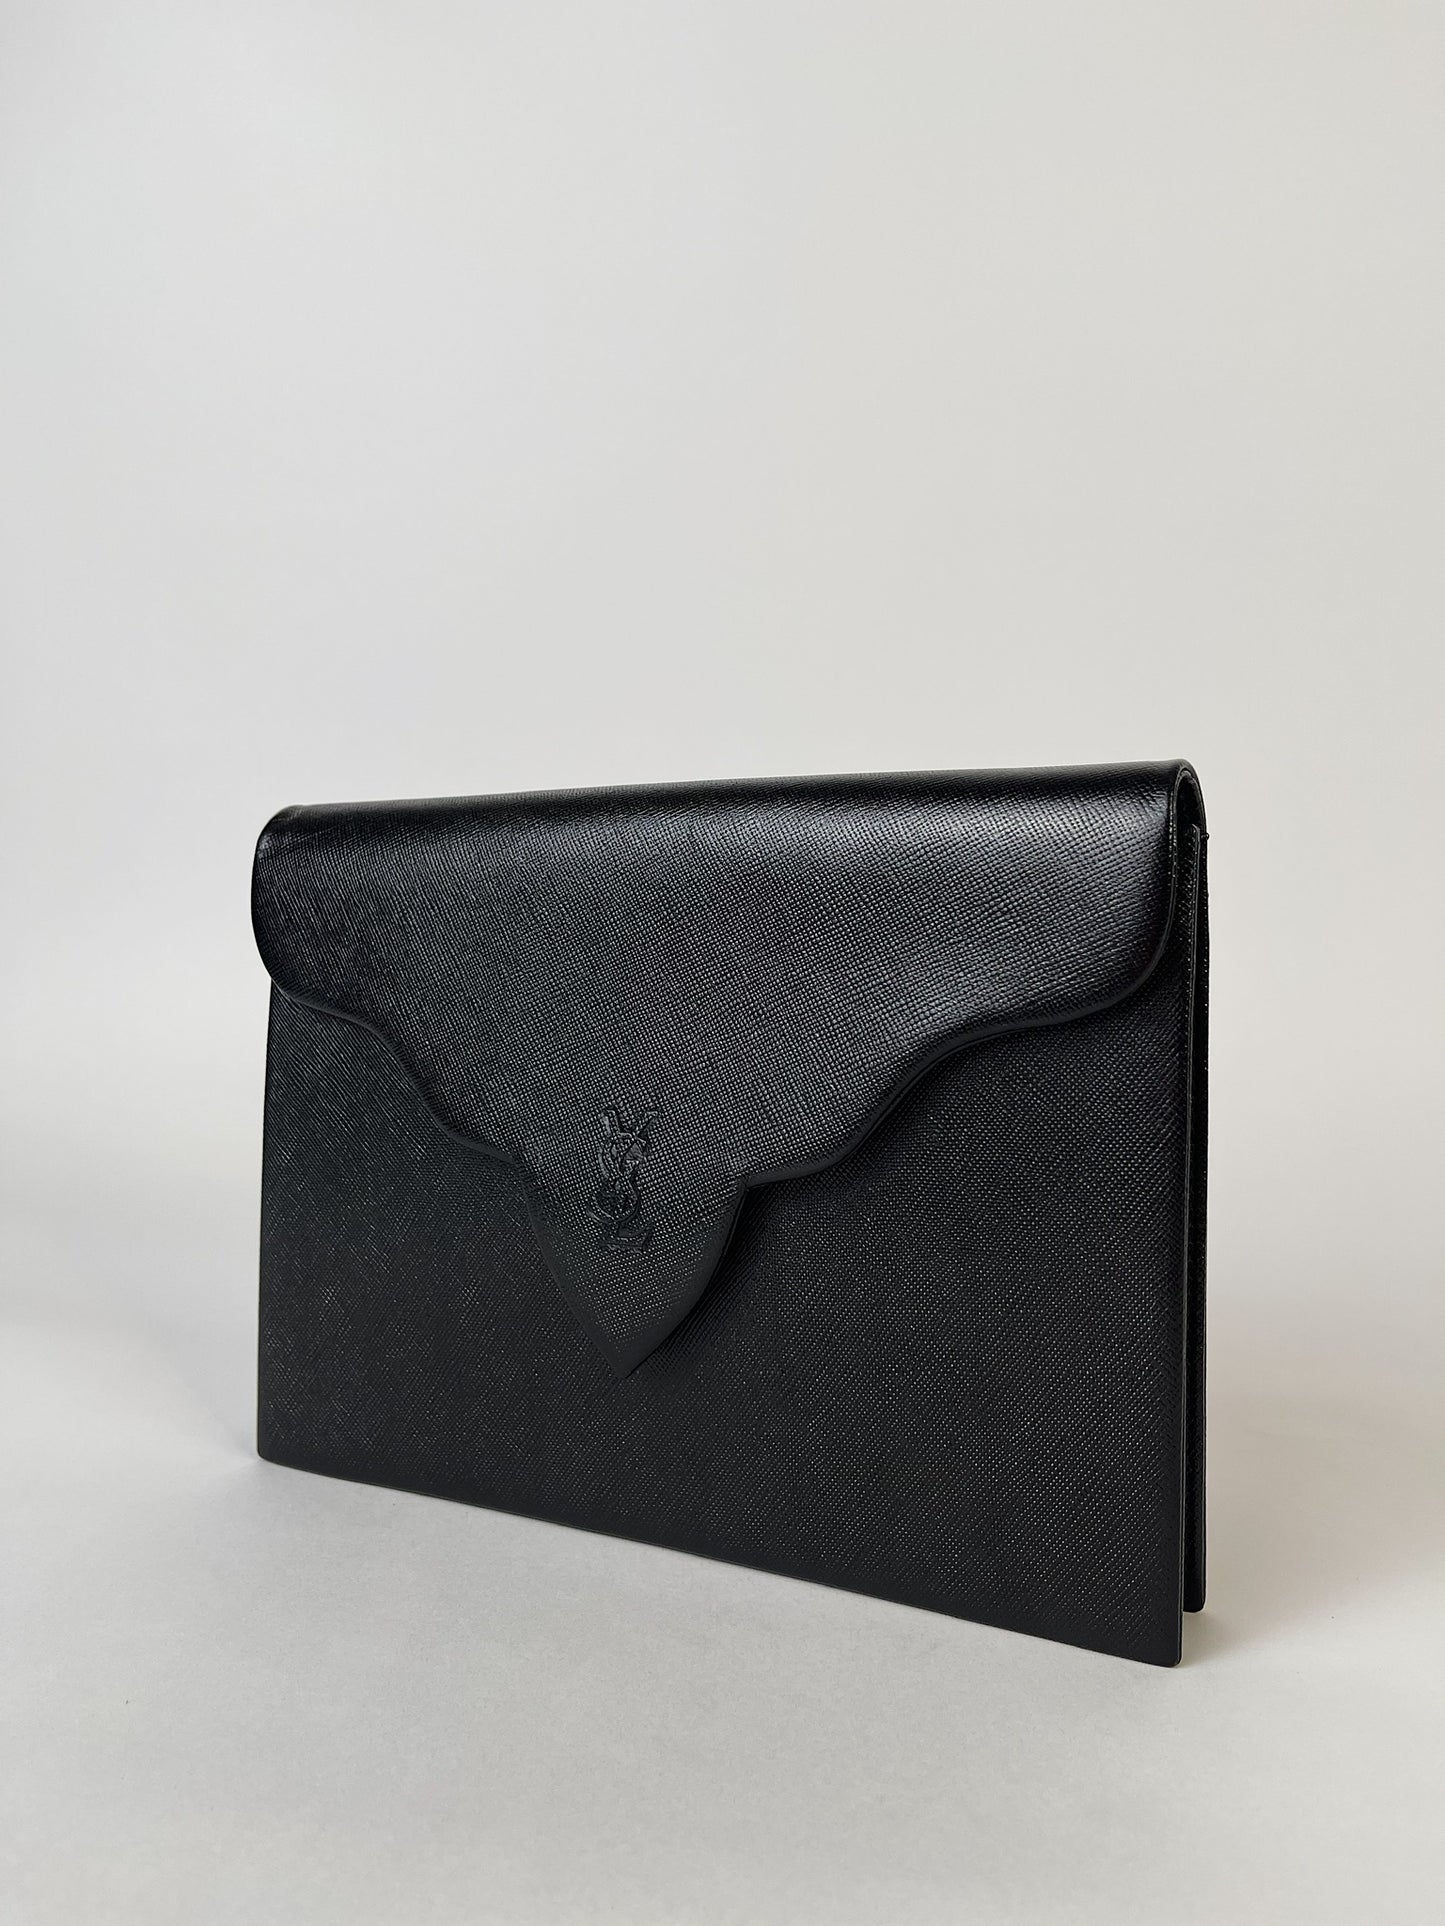 Yves Saint Laurent Black Saffiano Flap Clutch Bag